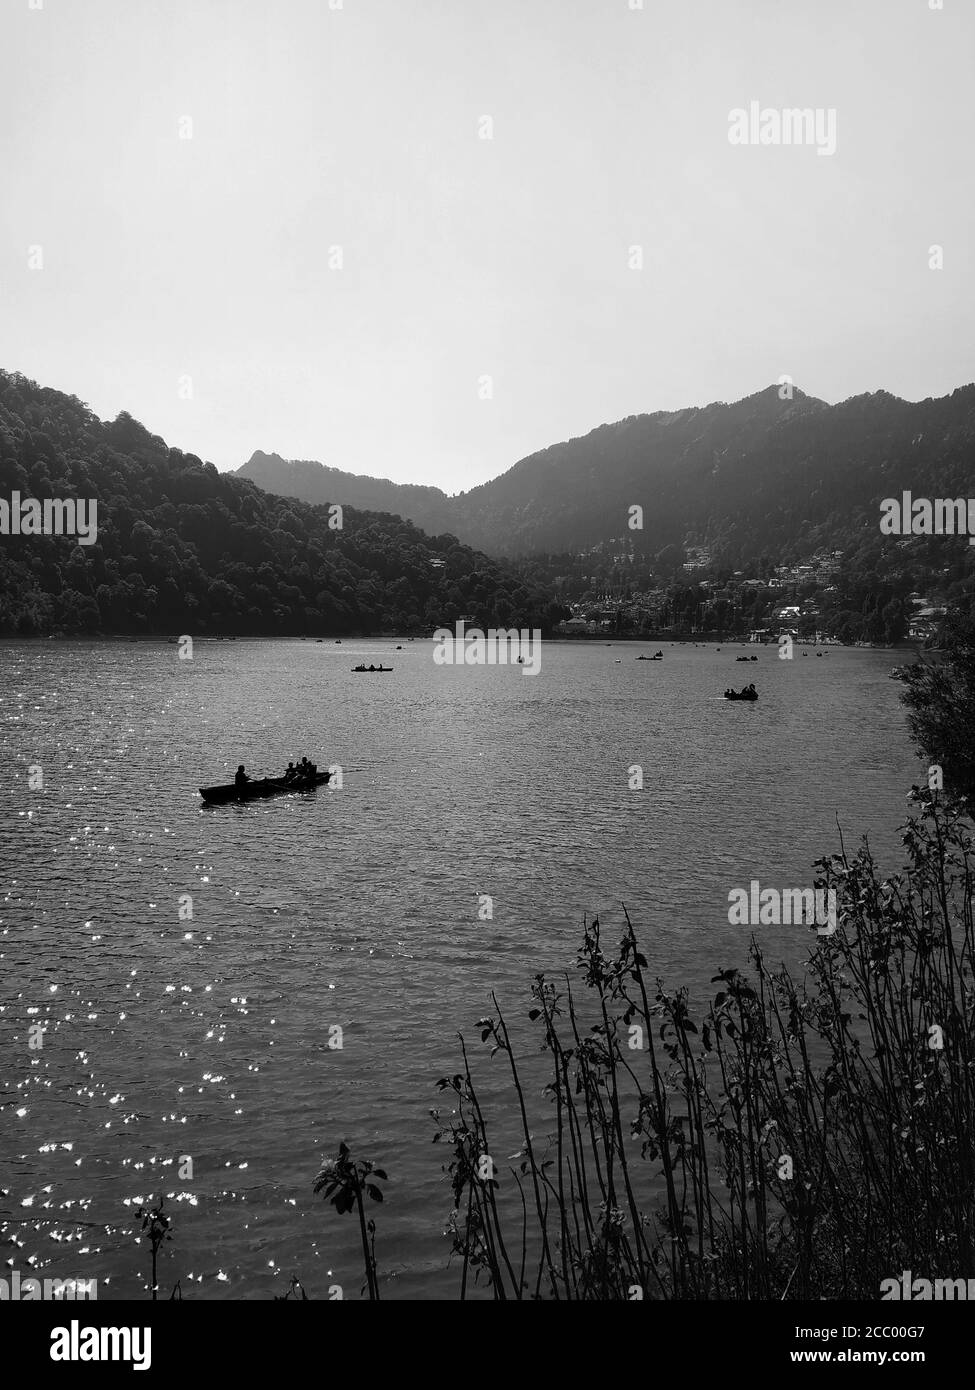 Photographie en noir et blanc du canotage sur un lac avec montagnes en arrière-plan Banque D'Images